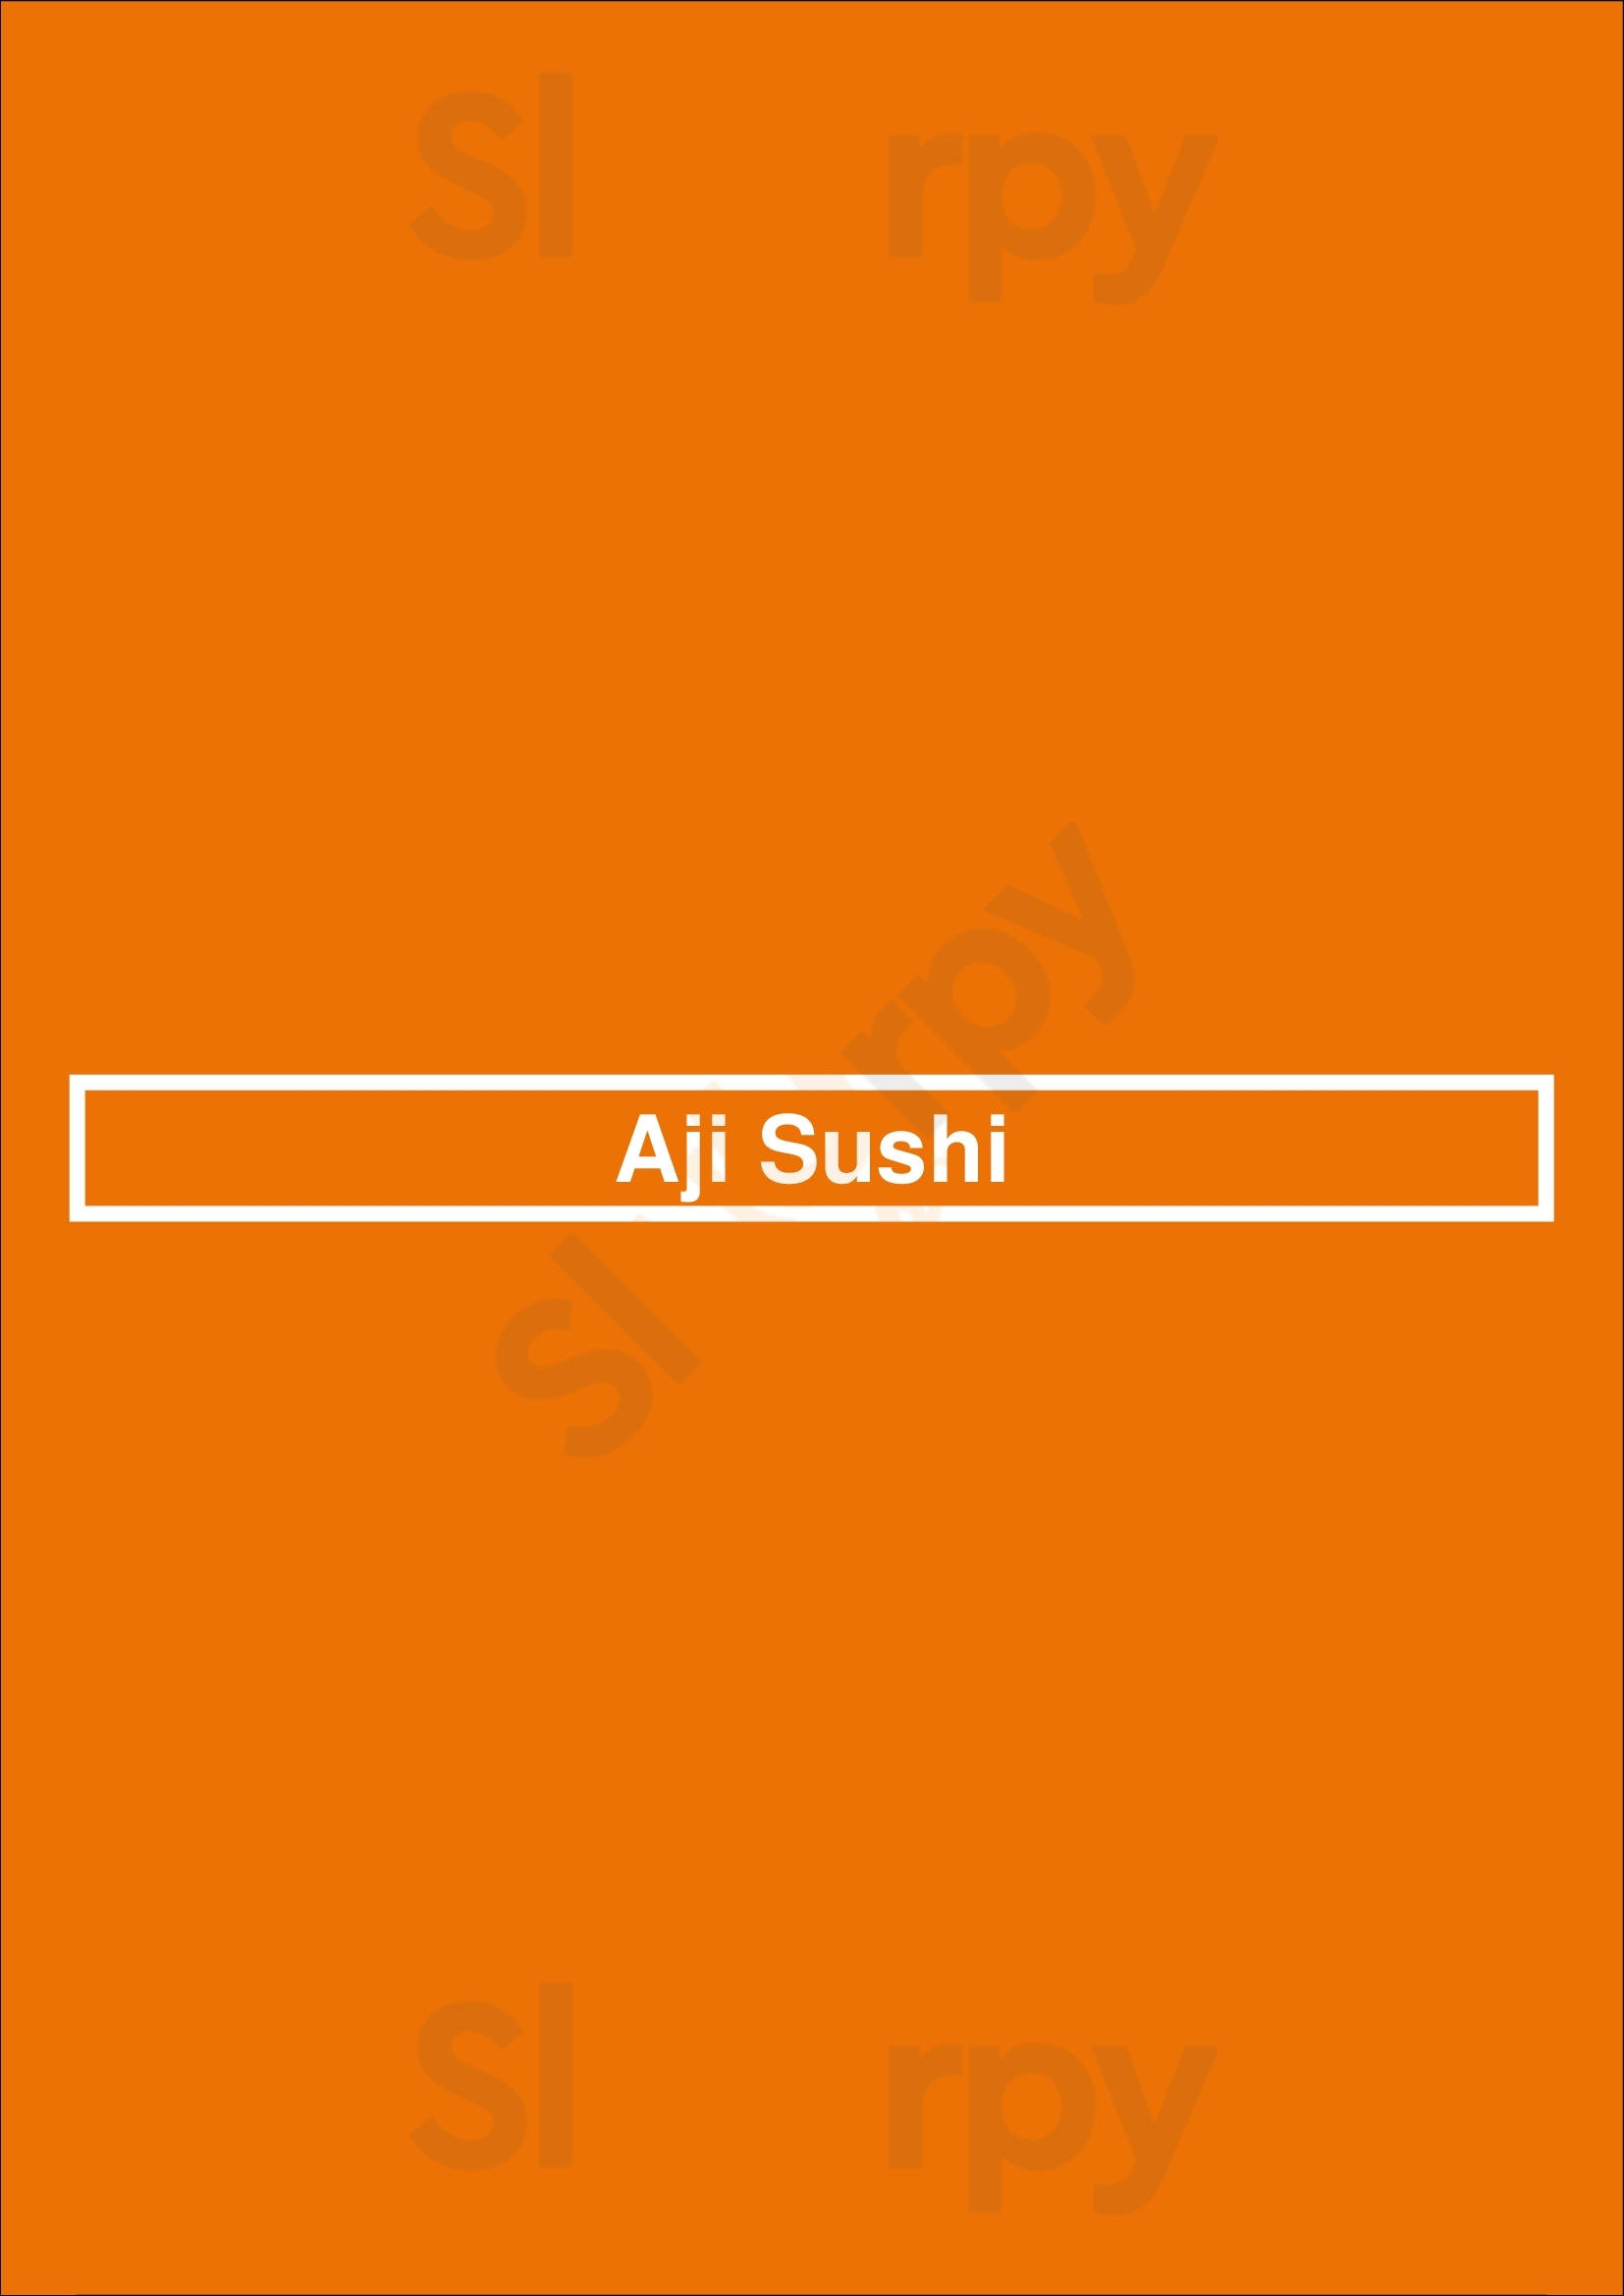 Aji Sushi Sacramento Menu - 1